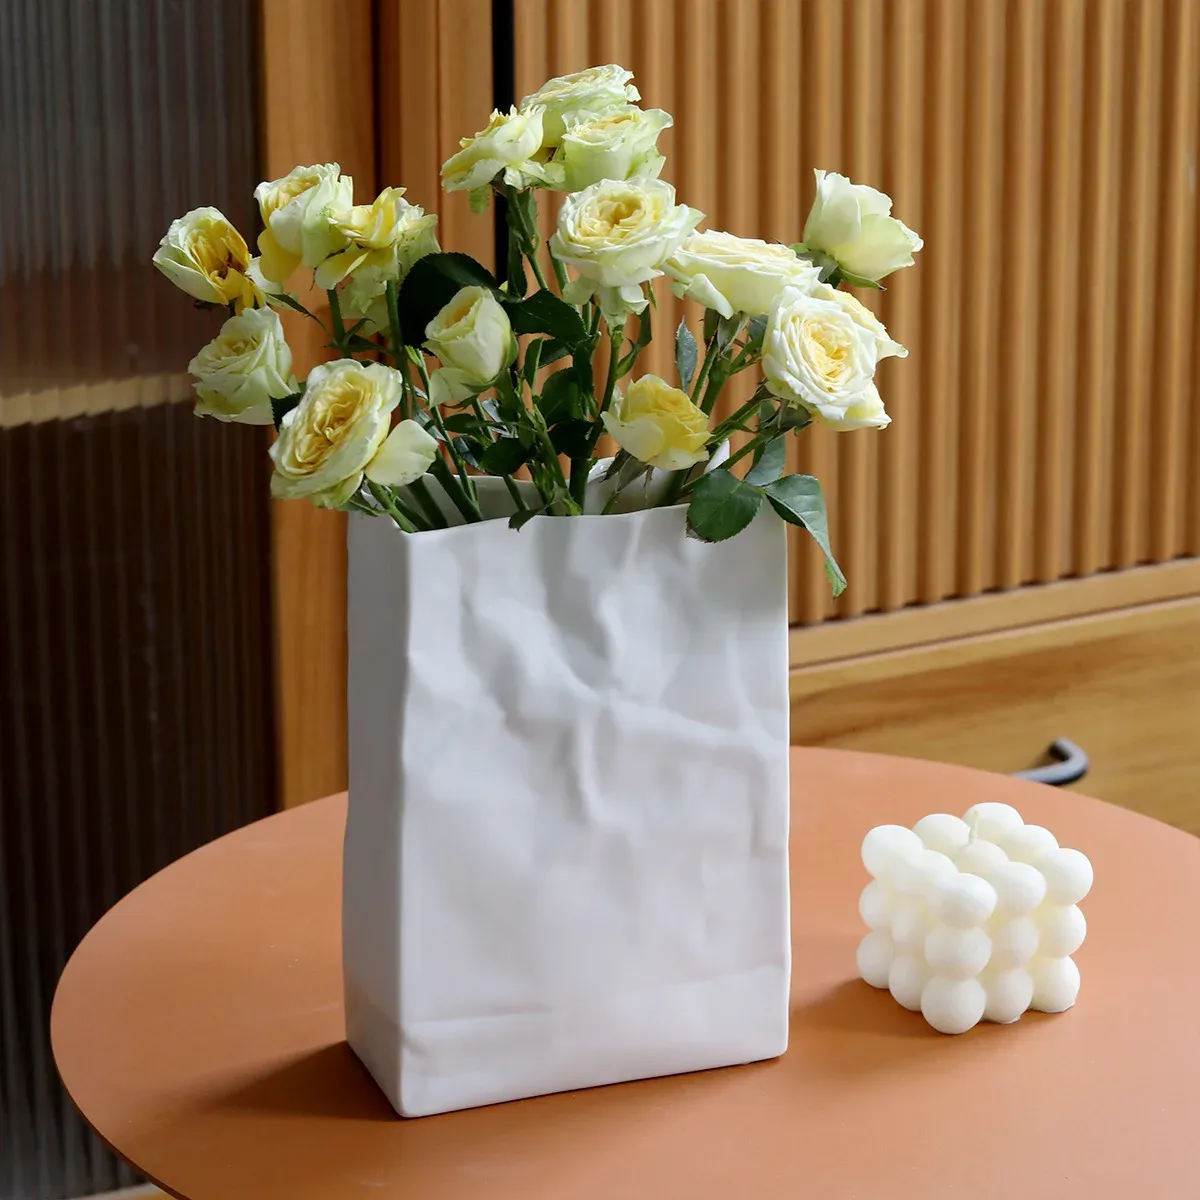 Jarrones Bolsa de papel Las decoraciones de jarrones de cerámica son simples, ligeras, lujosas y blancas con una sensación nórdica hidropónica y de alta gama.